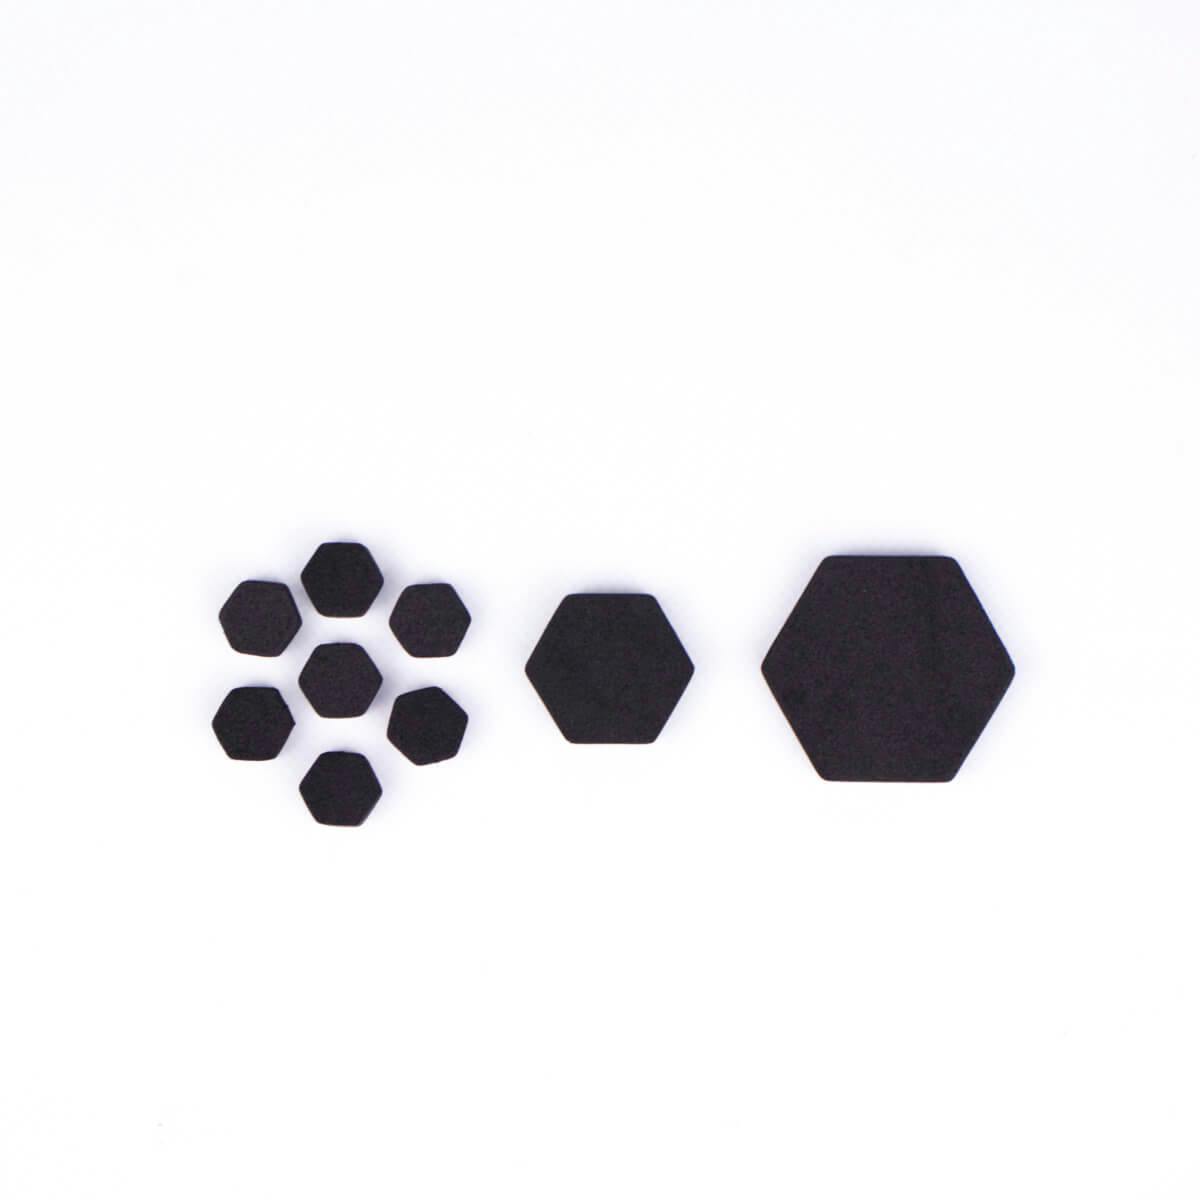 Ukázka několika malých 10mm pěnových šestiúhelníků